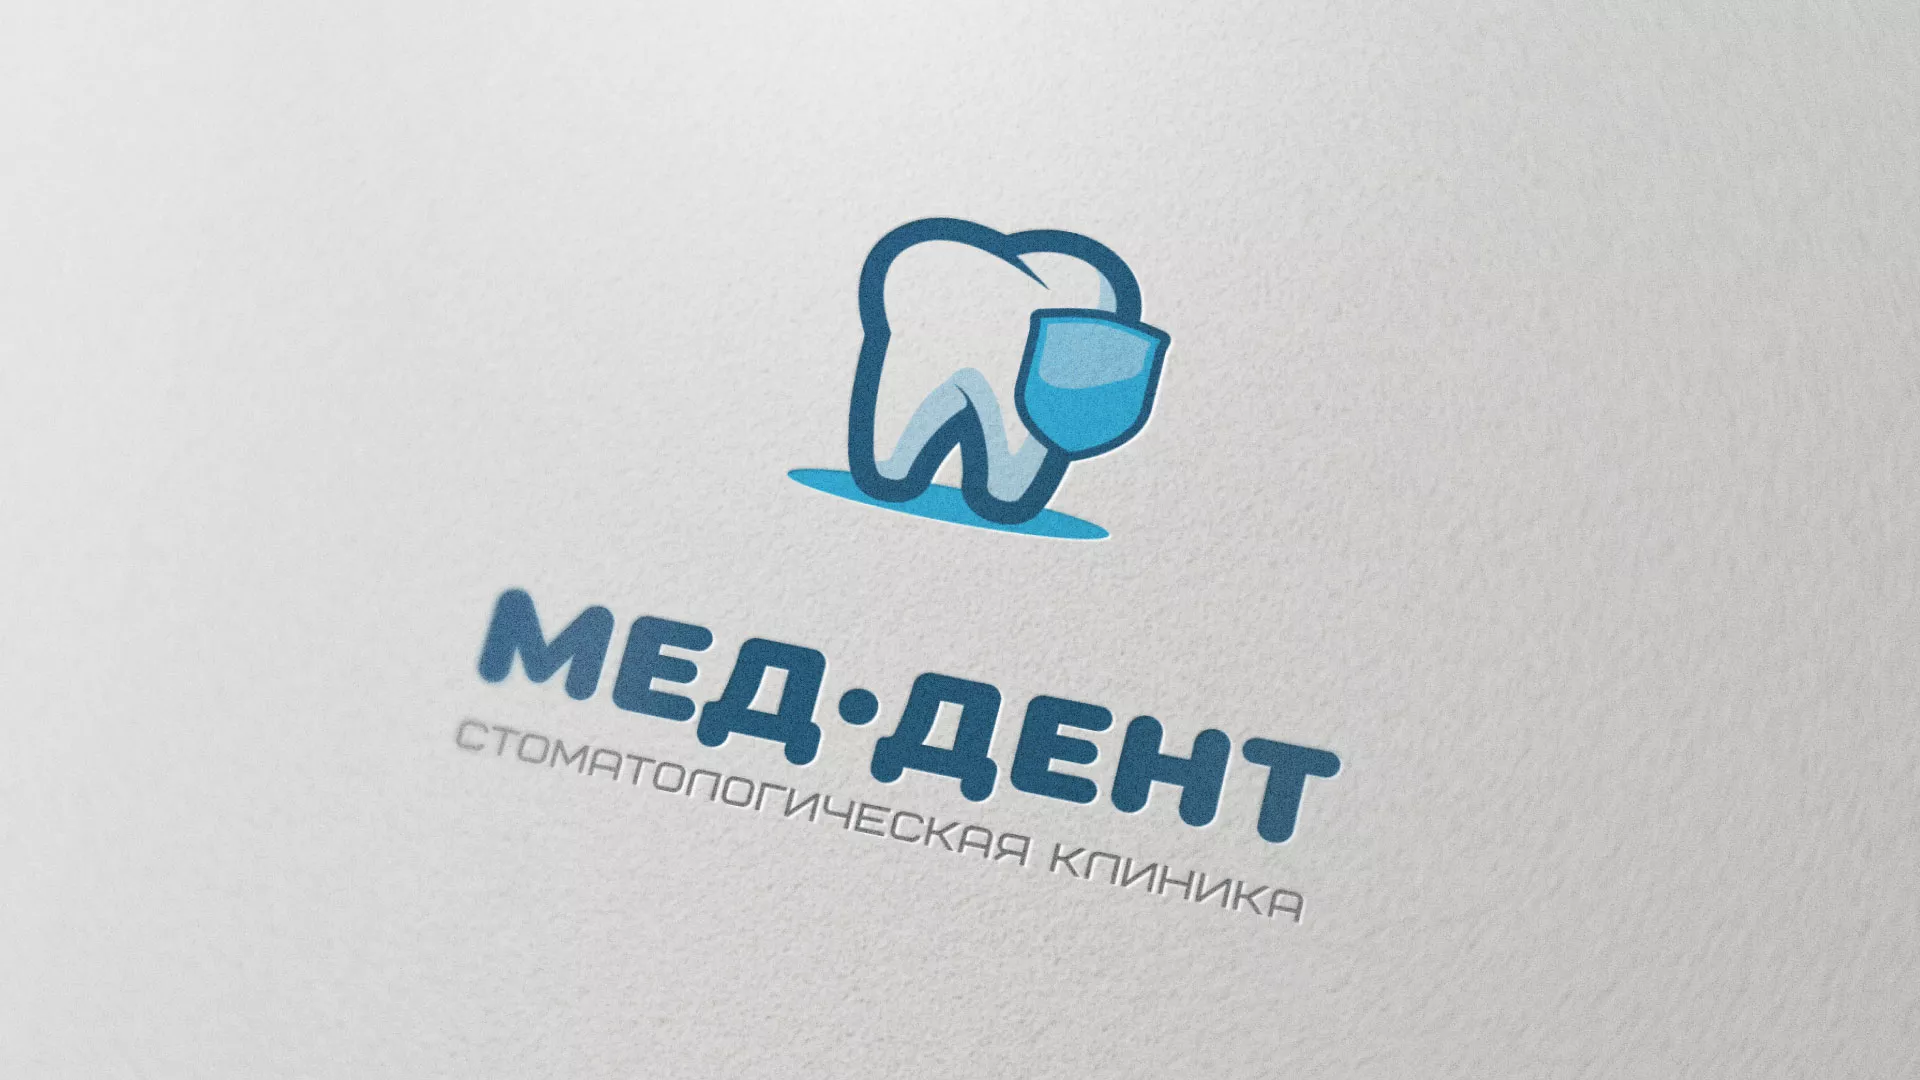 Разработка логотипа стоматологической клиники «МЕД-ДЕНТ» в Лодейном Поле